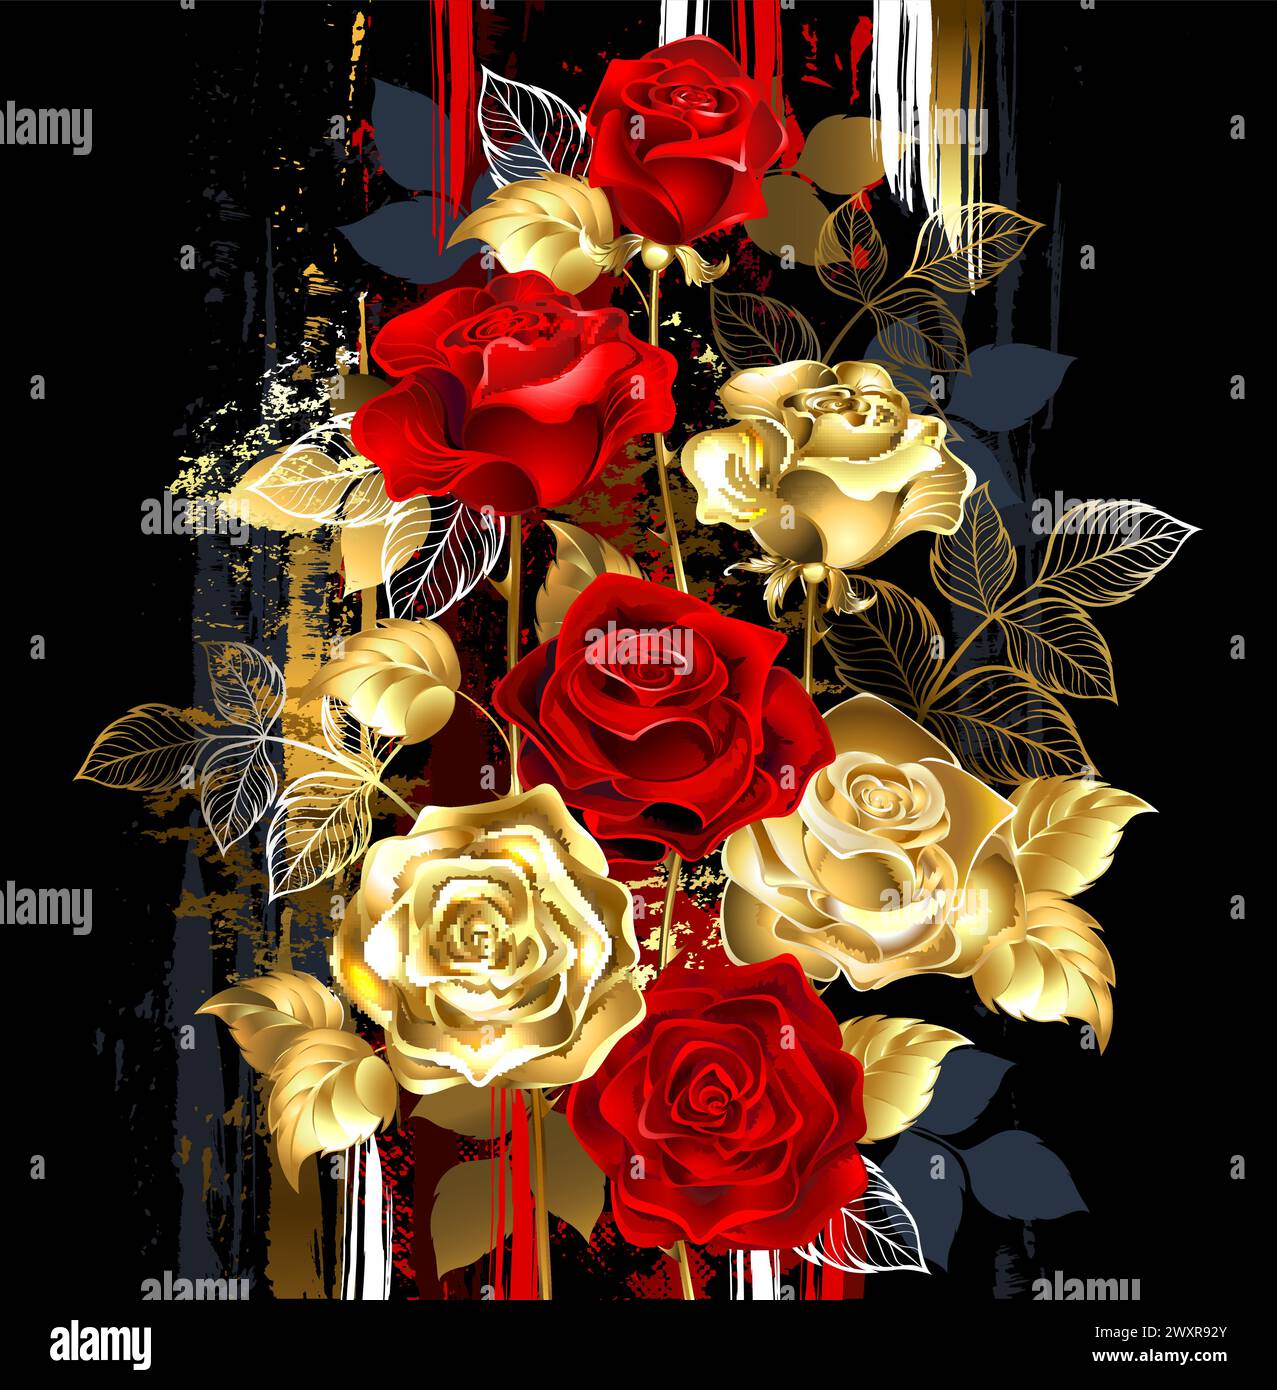 Florale Komposition aus Gold, Schmuck, glänzenden Rosen und roten, blühenden Rosen auf dunklem Hintergrund überstrichen mit großen Farbstrichen. Goldene Rose. Art. P Stock Vektor